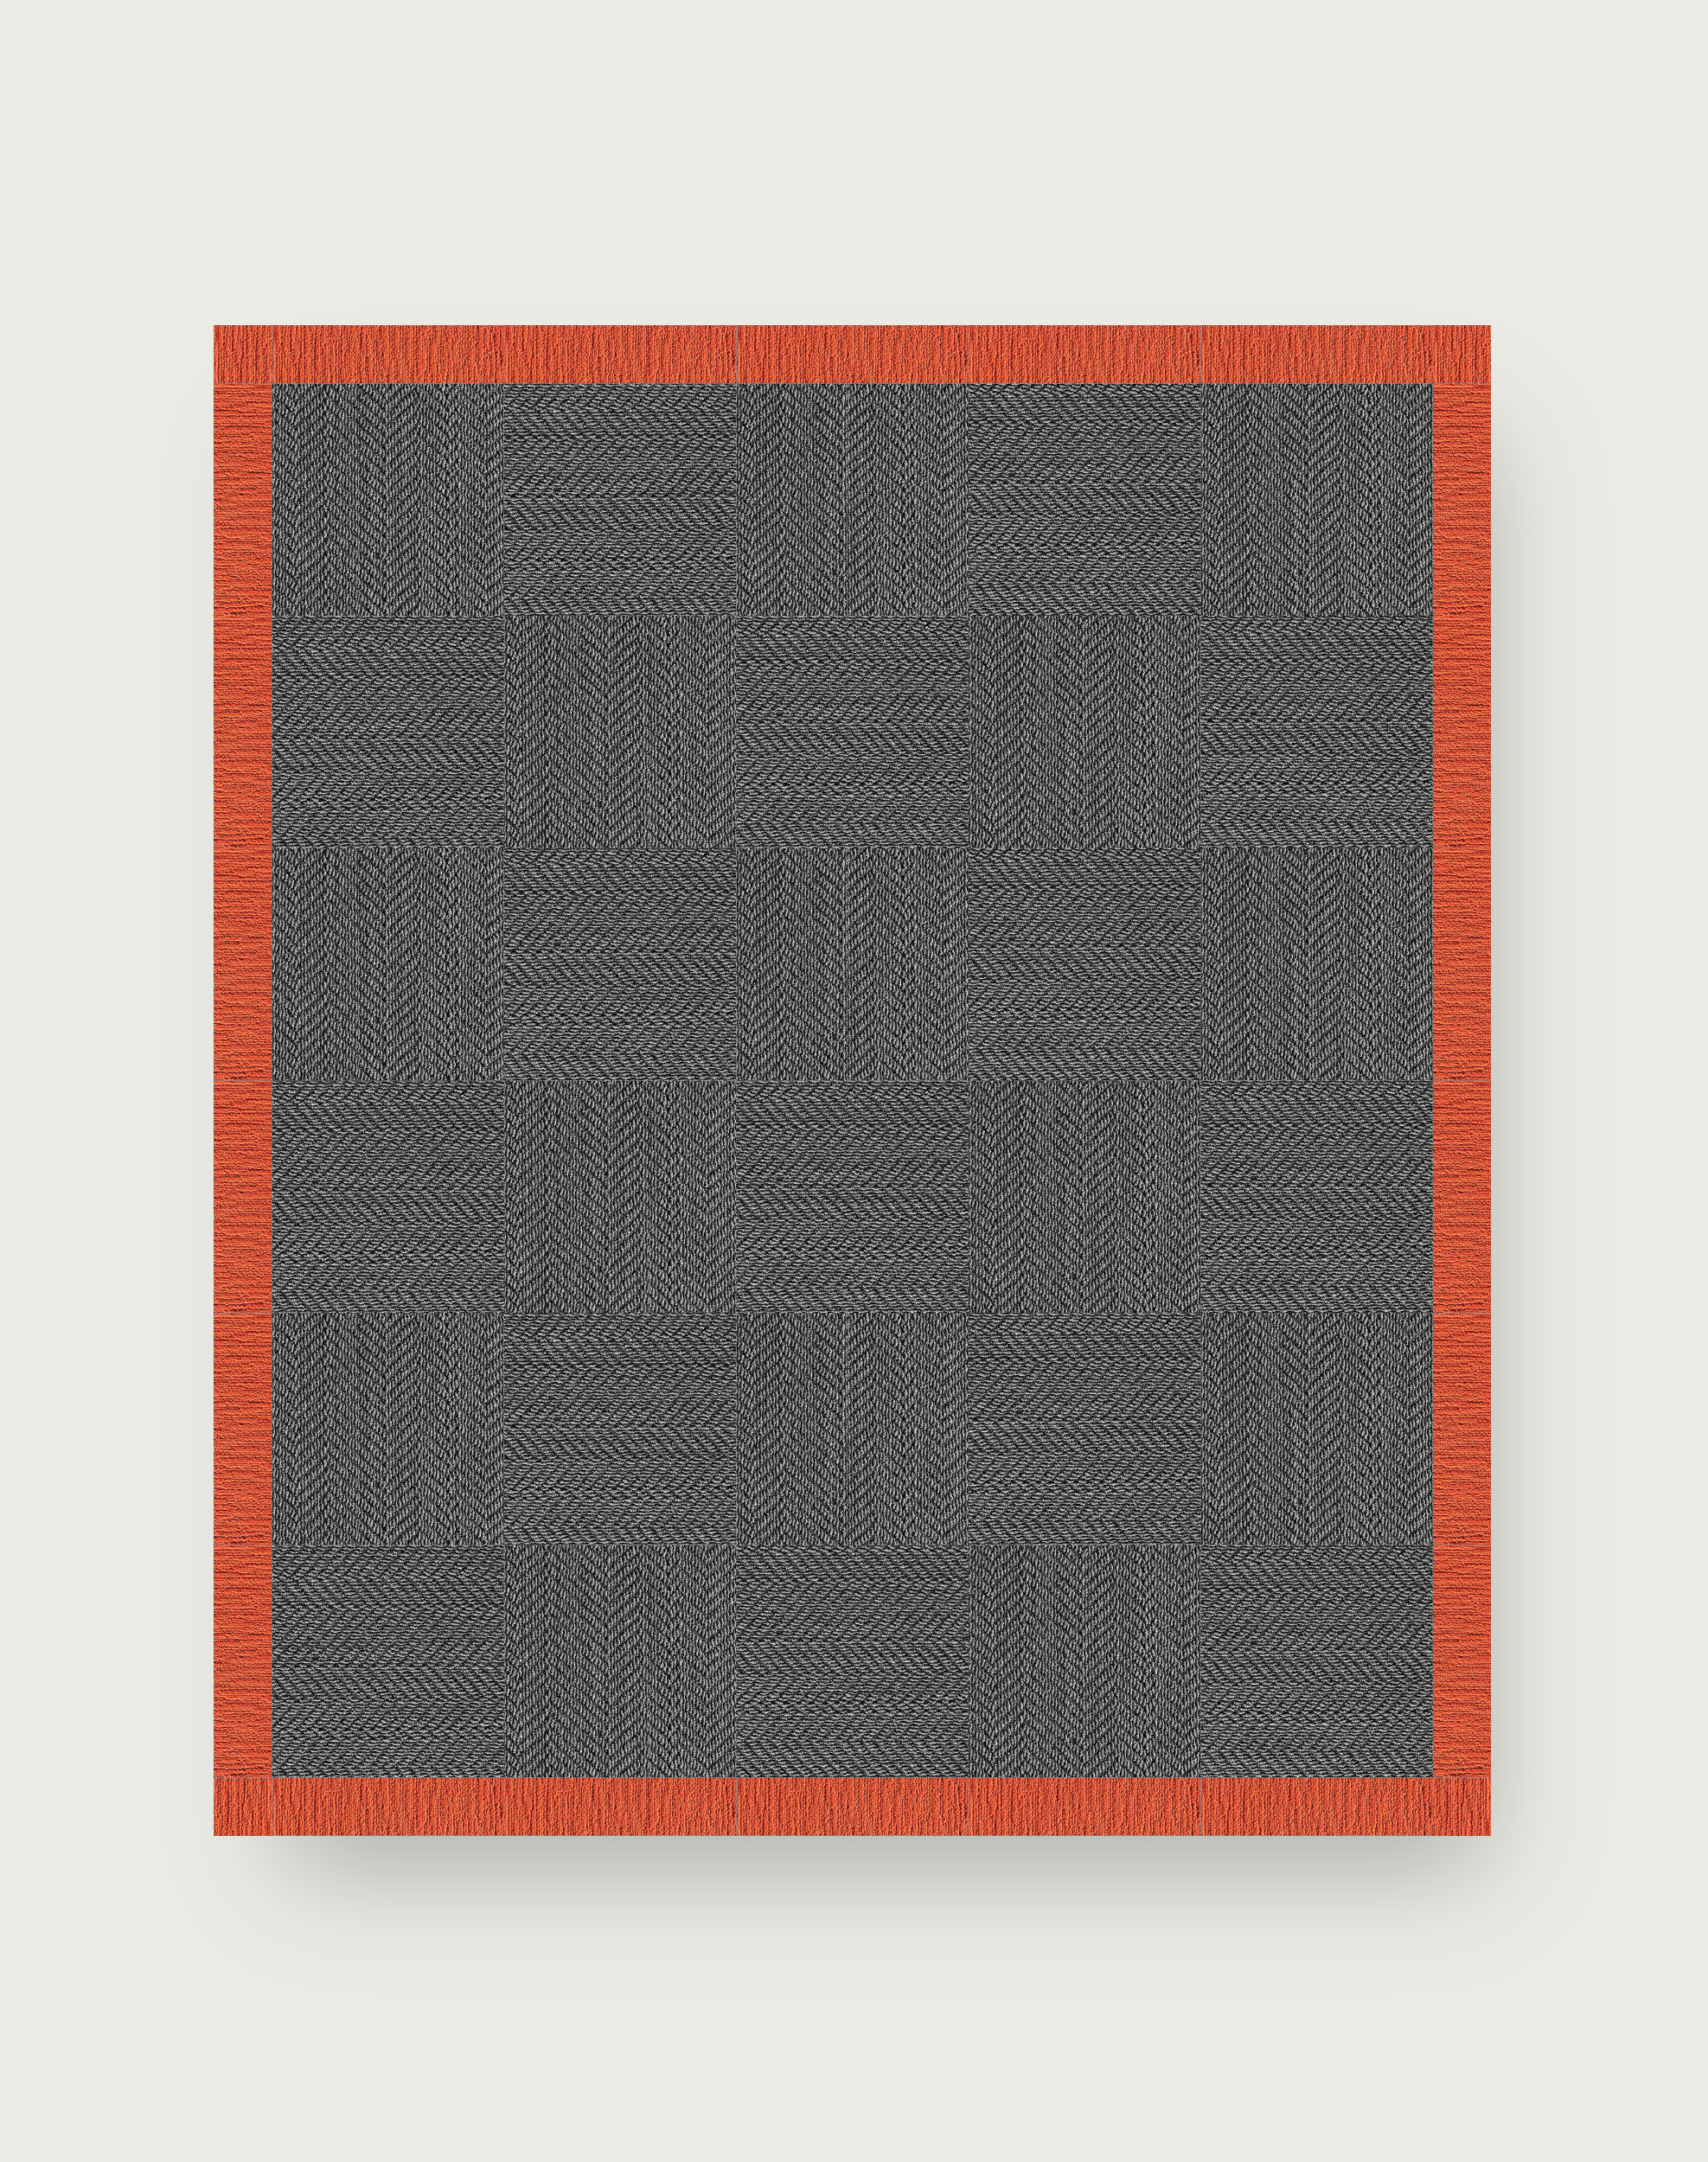 Suit Yourself Quarter Border - Granite / Tangerine - 9x11